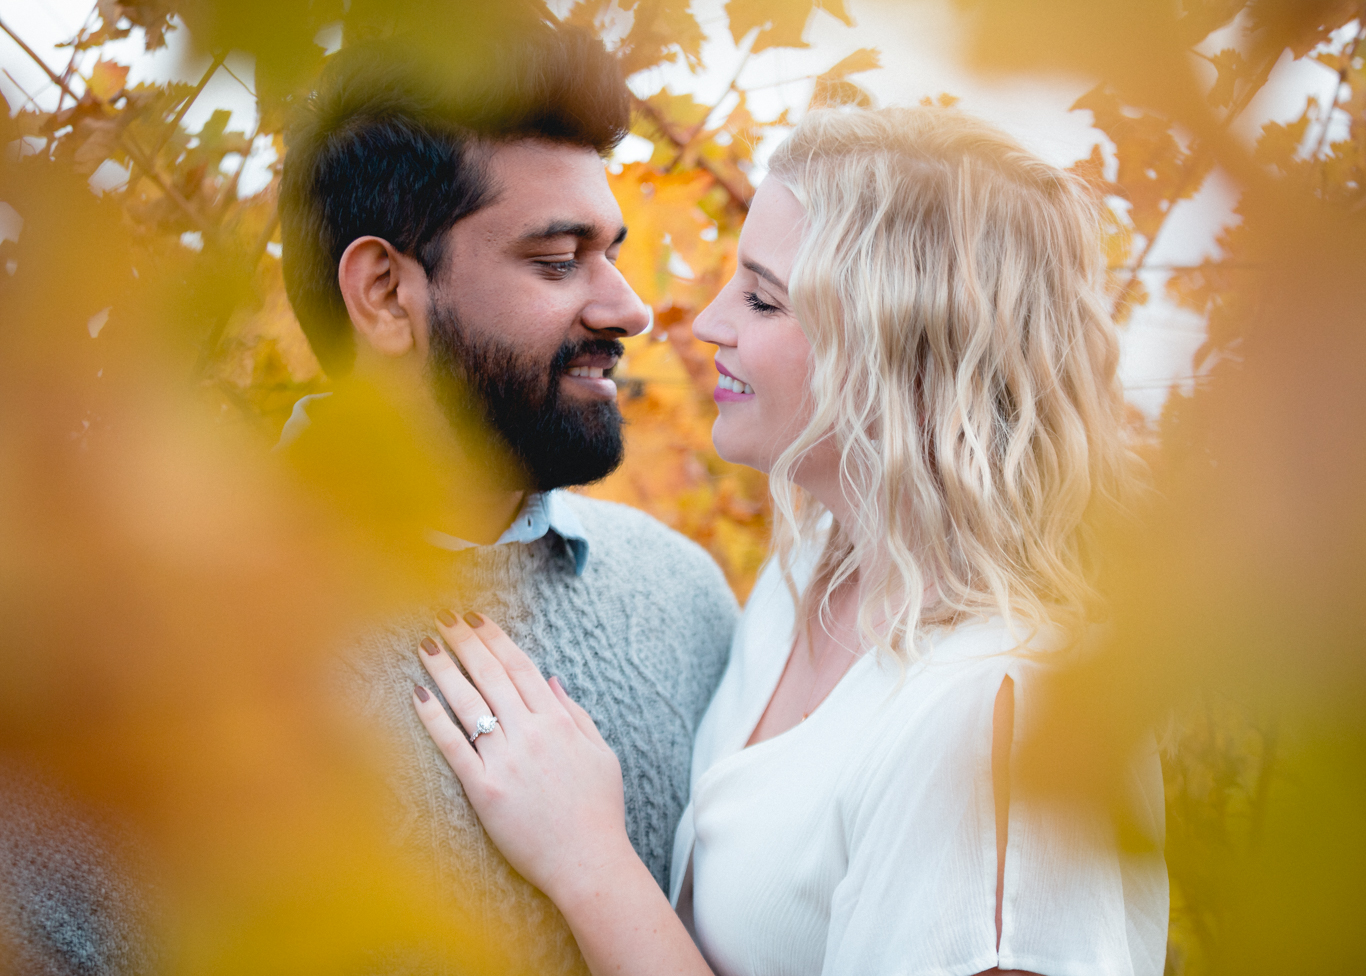 2018.12.03_Ashir-and-Emily-Engagement-Photography-@heymikefrancis-napa-valley-wedding-sacremento-california-heyfrancis-mikefrancis-7957.jpg